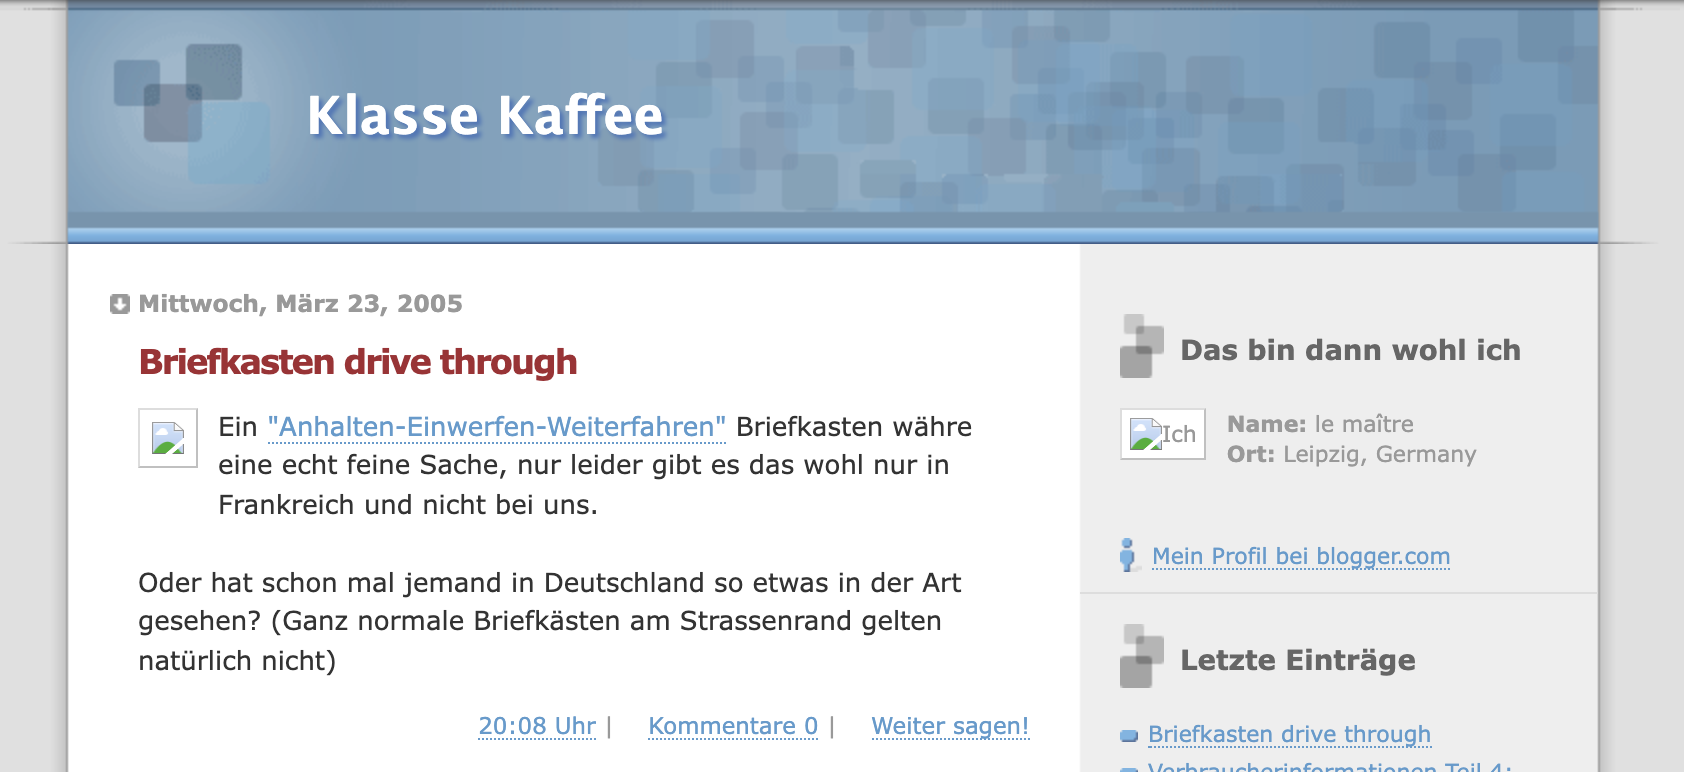 Screenshot of "Klasse Kaffee" from 2005